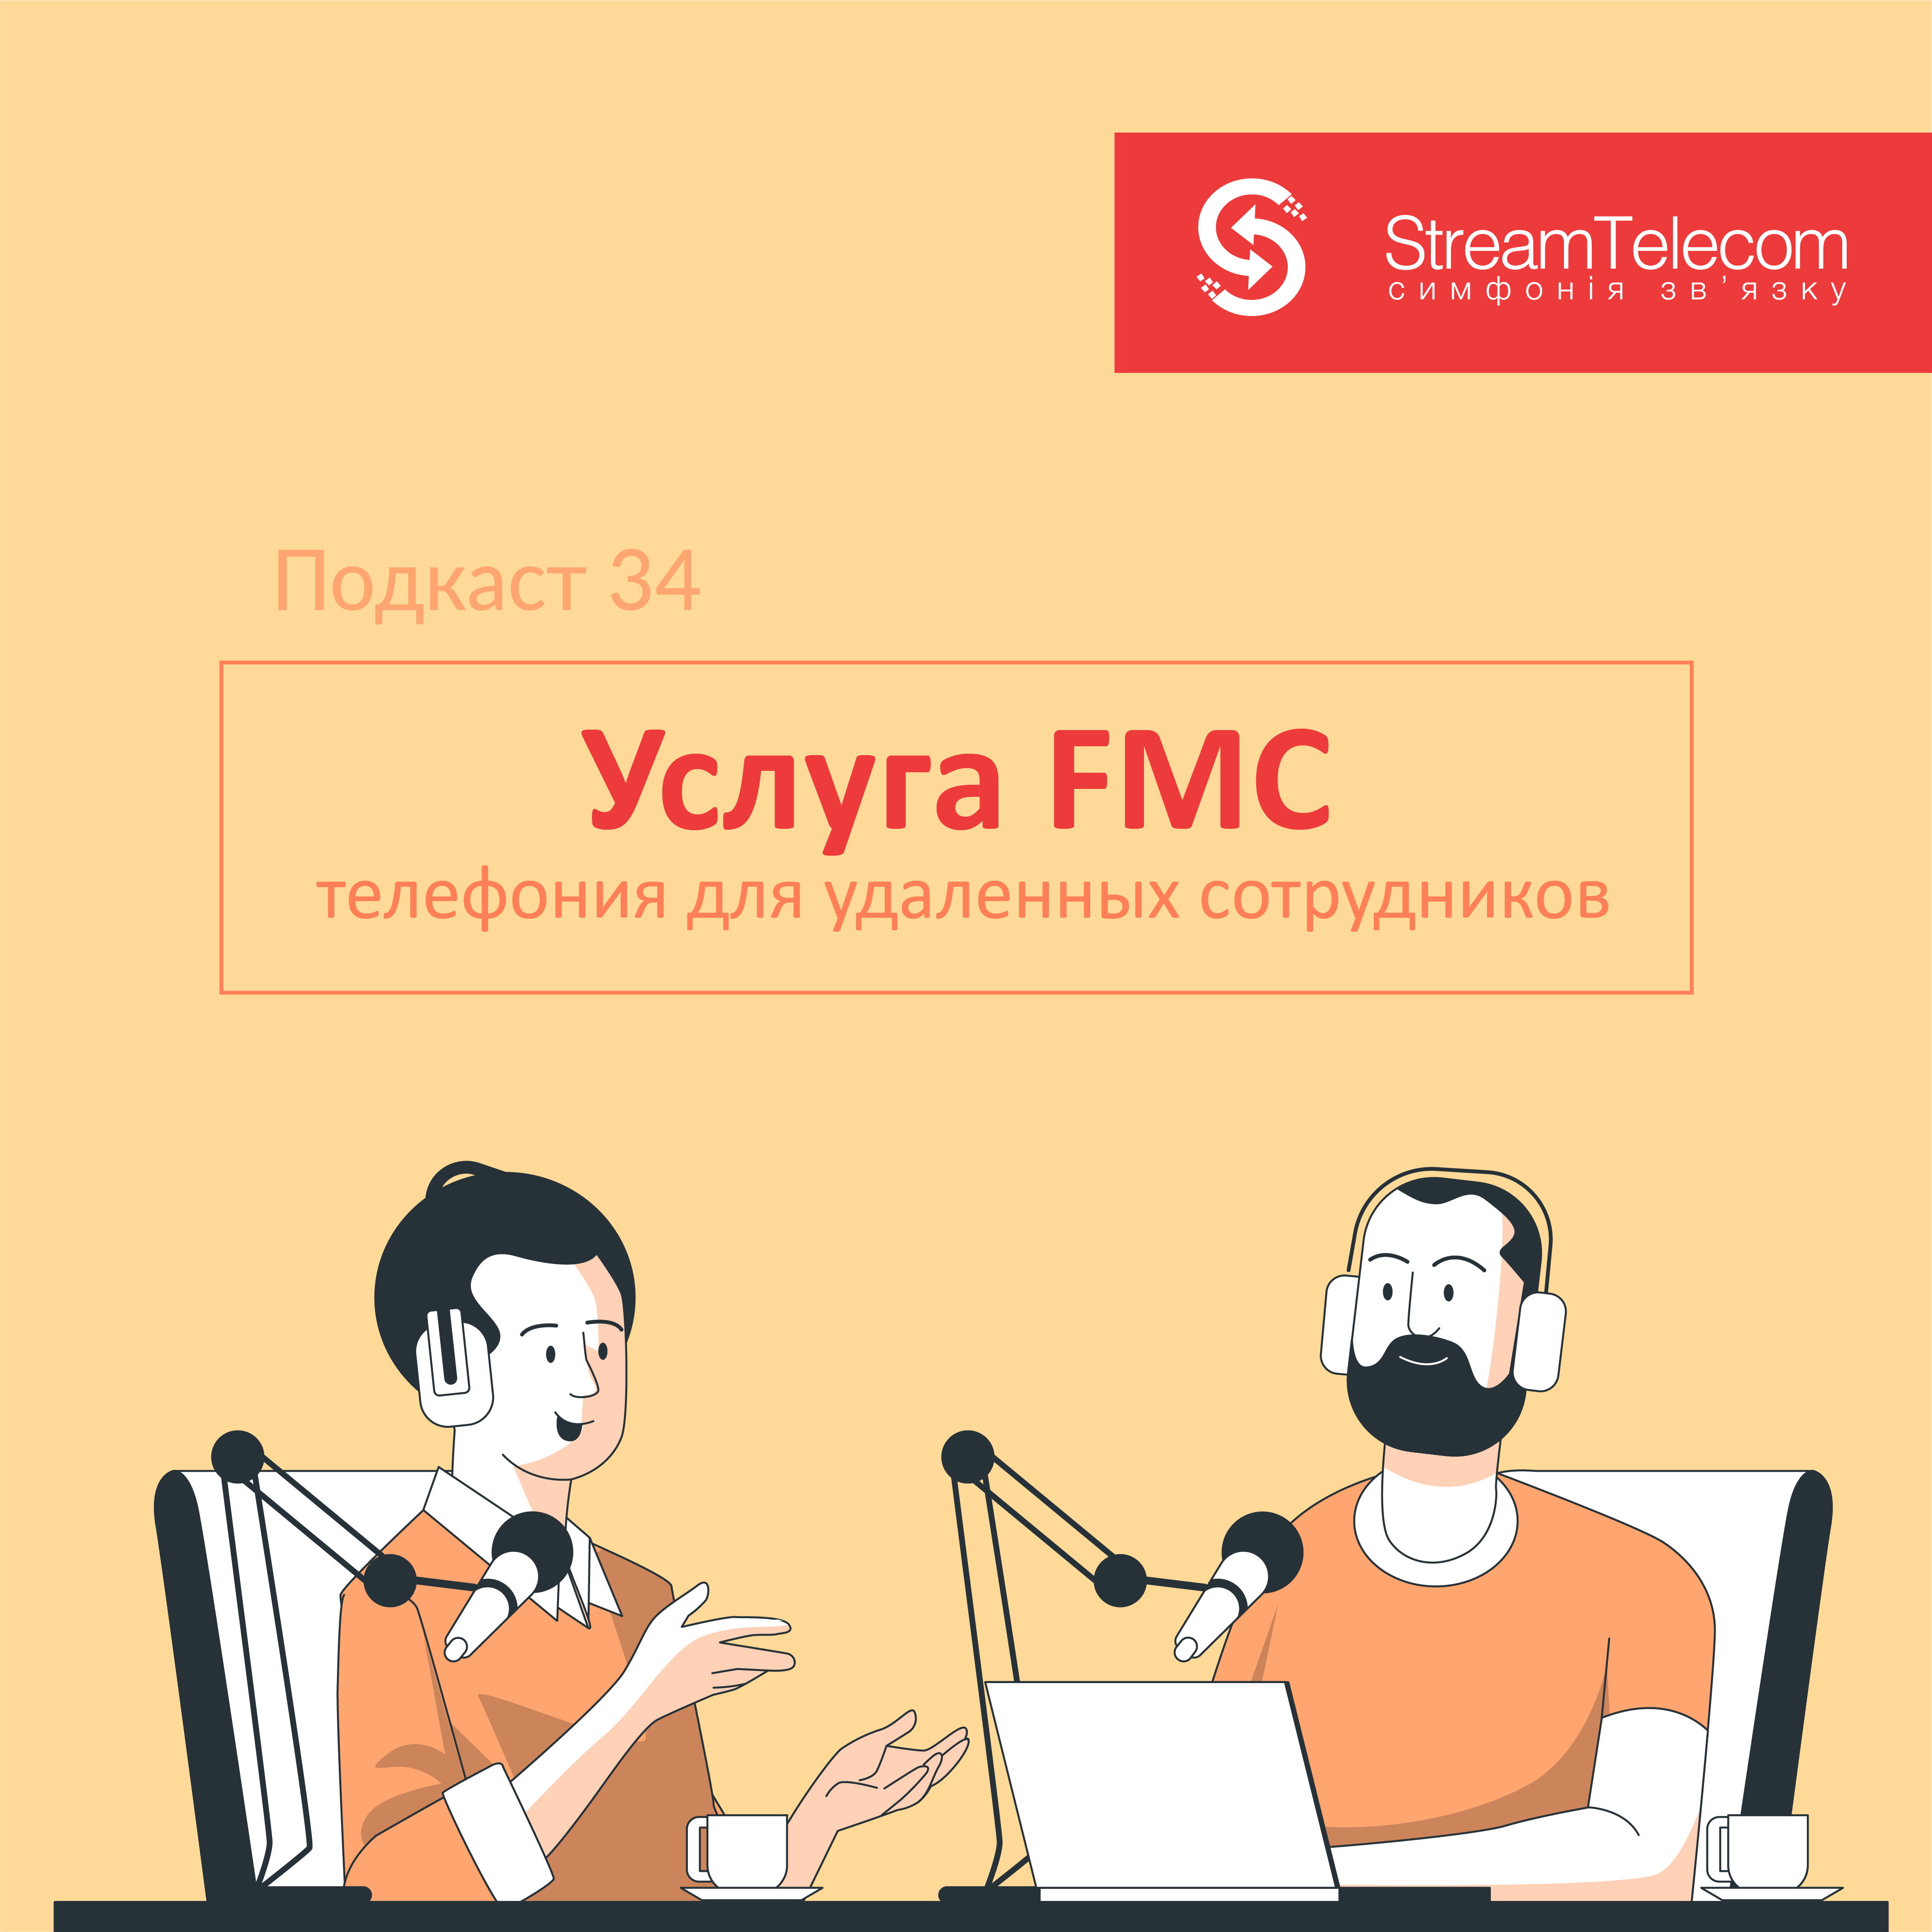 Услуга FMC: телефония для удаленных сотрудников